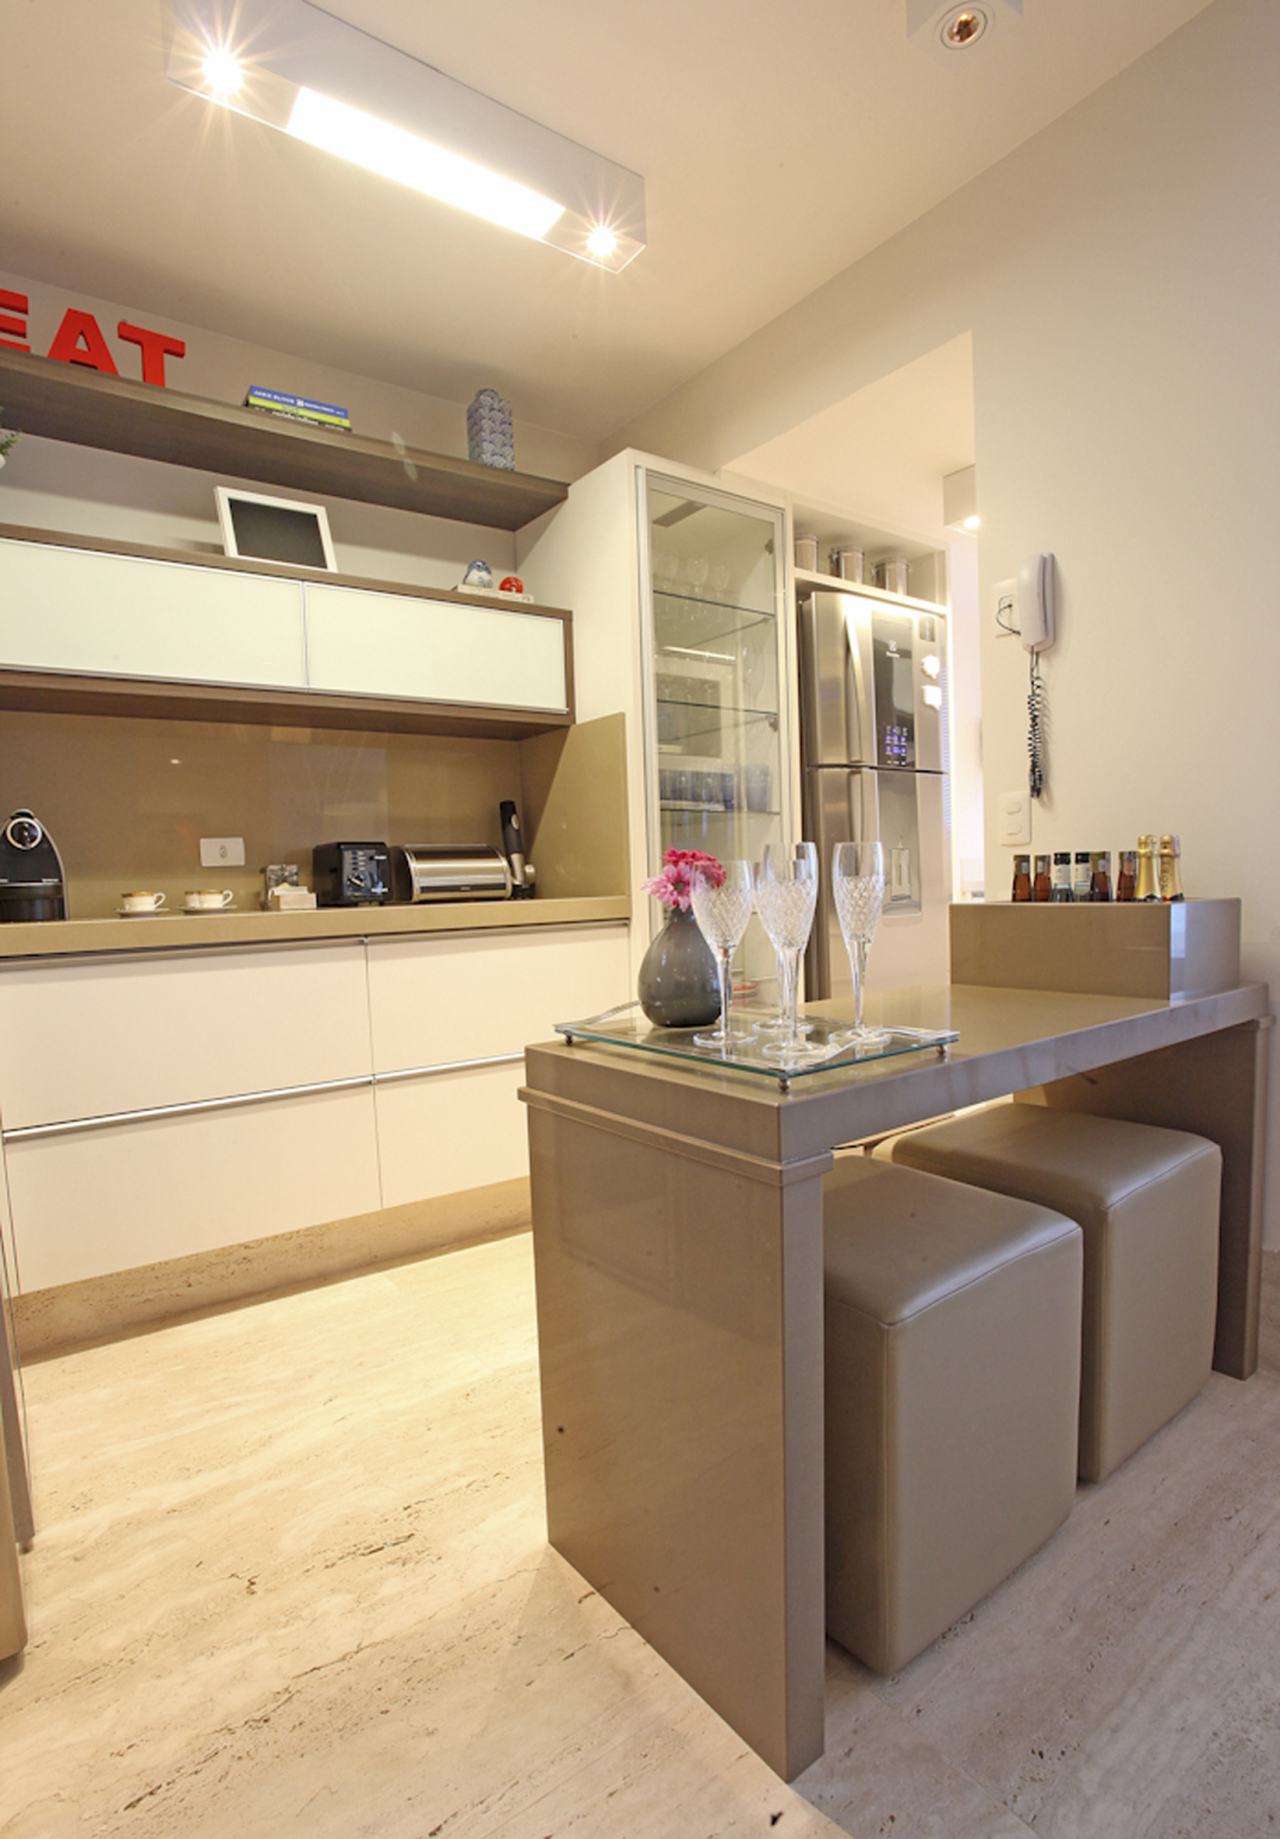 Cozinha integrada: o piso e o mobiliário no mesmo tom da sala dá a ideia de continuidade.